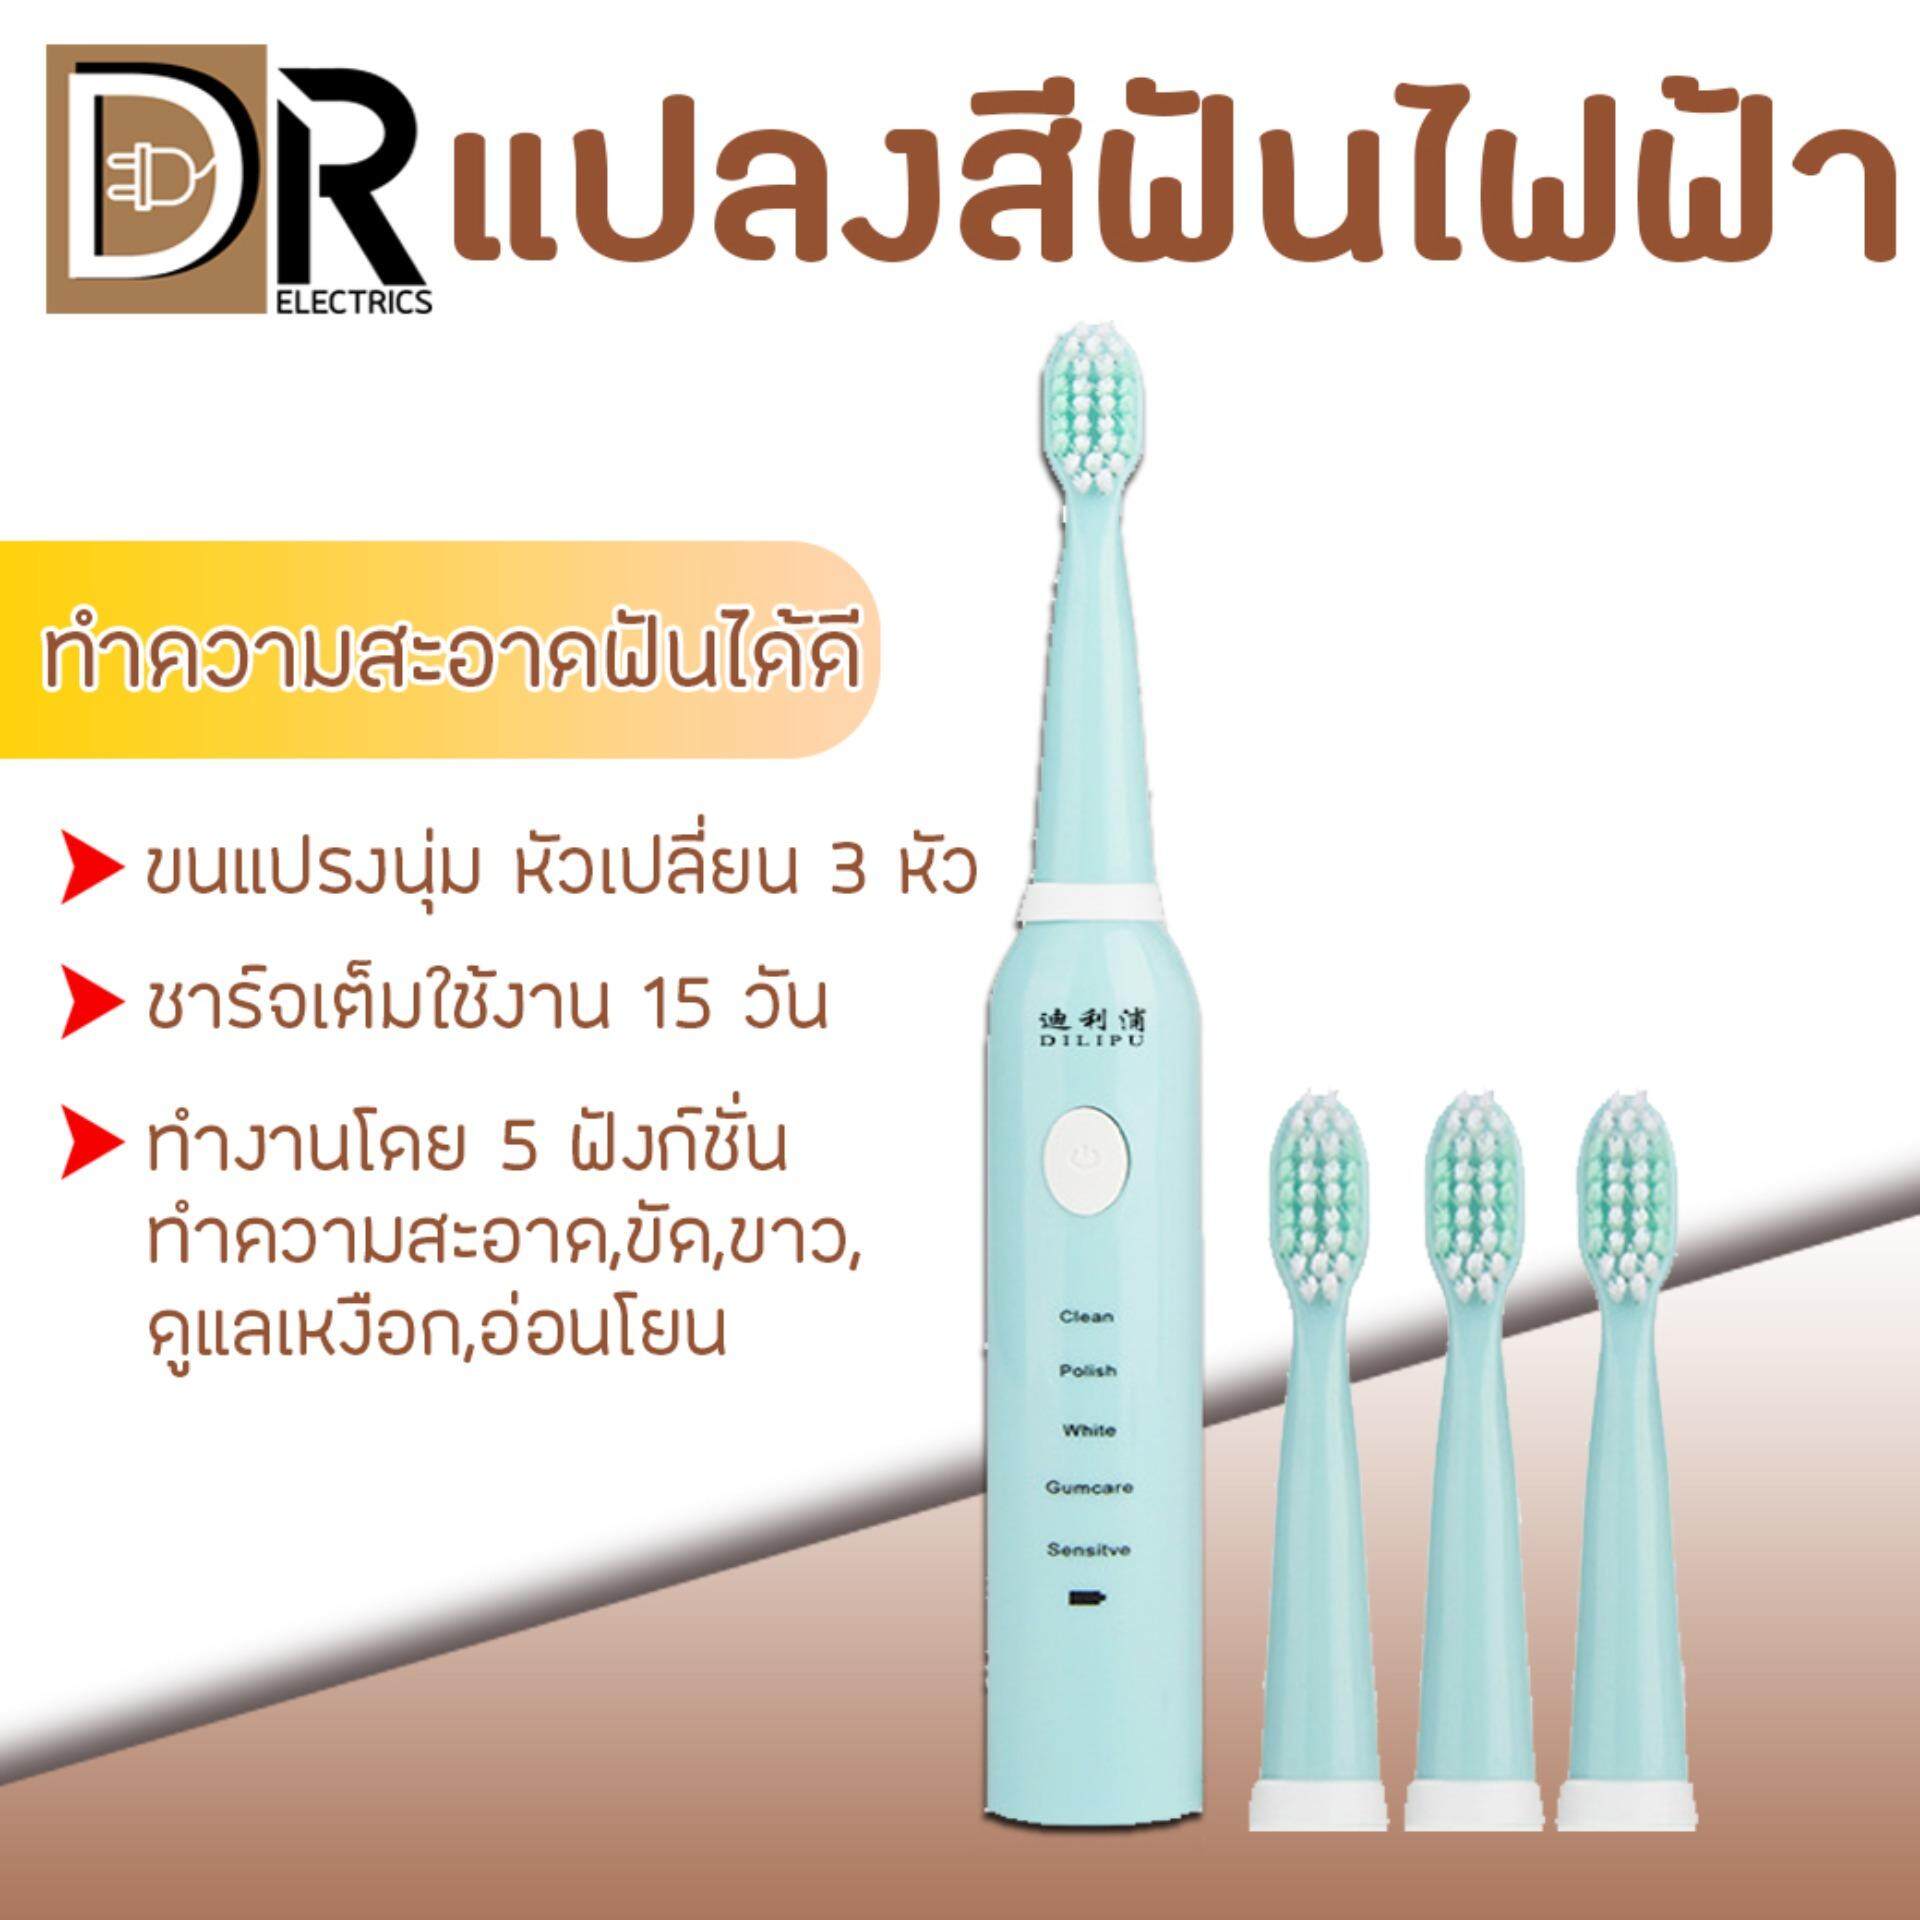 แปรงสีฟันไฟฟ้า รอยยิ้มขาวสดใสใน 1 สัปดาห์ สุโขทัย แปลงสีฟัน แปรงสีฟันไฟฟ้า ระบบSonic ชุดแปรงสีฟันไฟฟ้า พร้อมหัวเปลี่ยน 3 หัว ขนแรปงนิ่ม ชาร์จแบต กันน้ำ Electric Toothbrushes Sonic Vibration มีฟังก์ชั่น 5 DR ELECTRICS